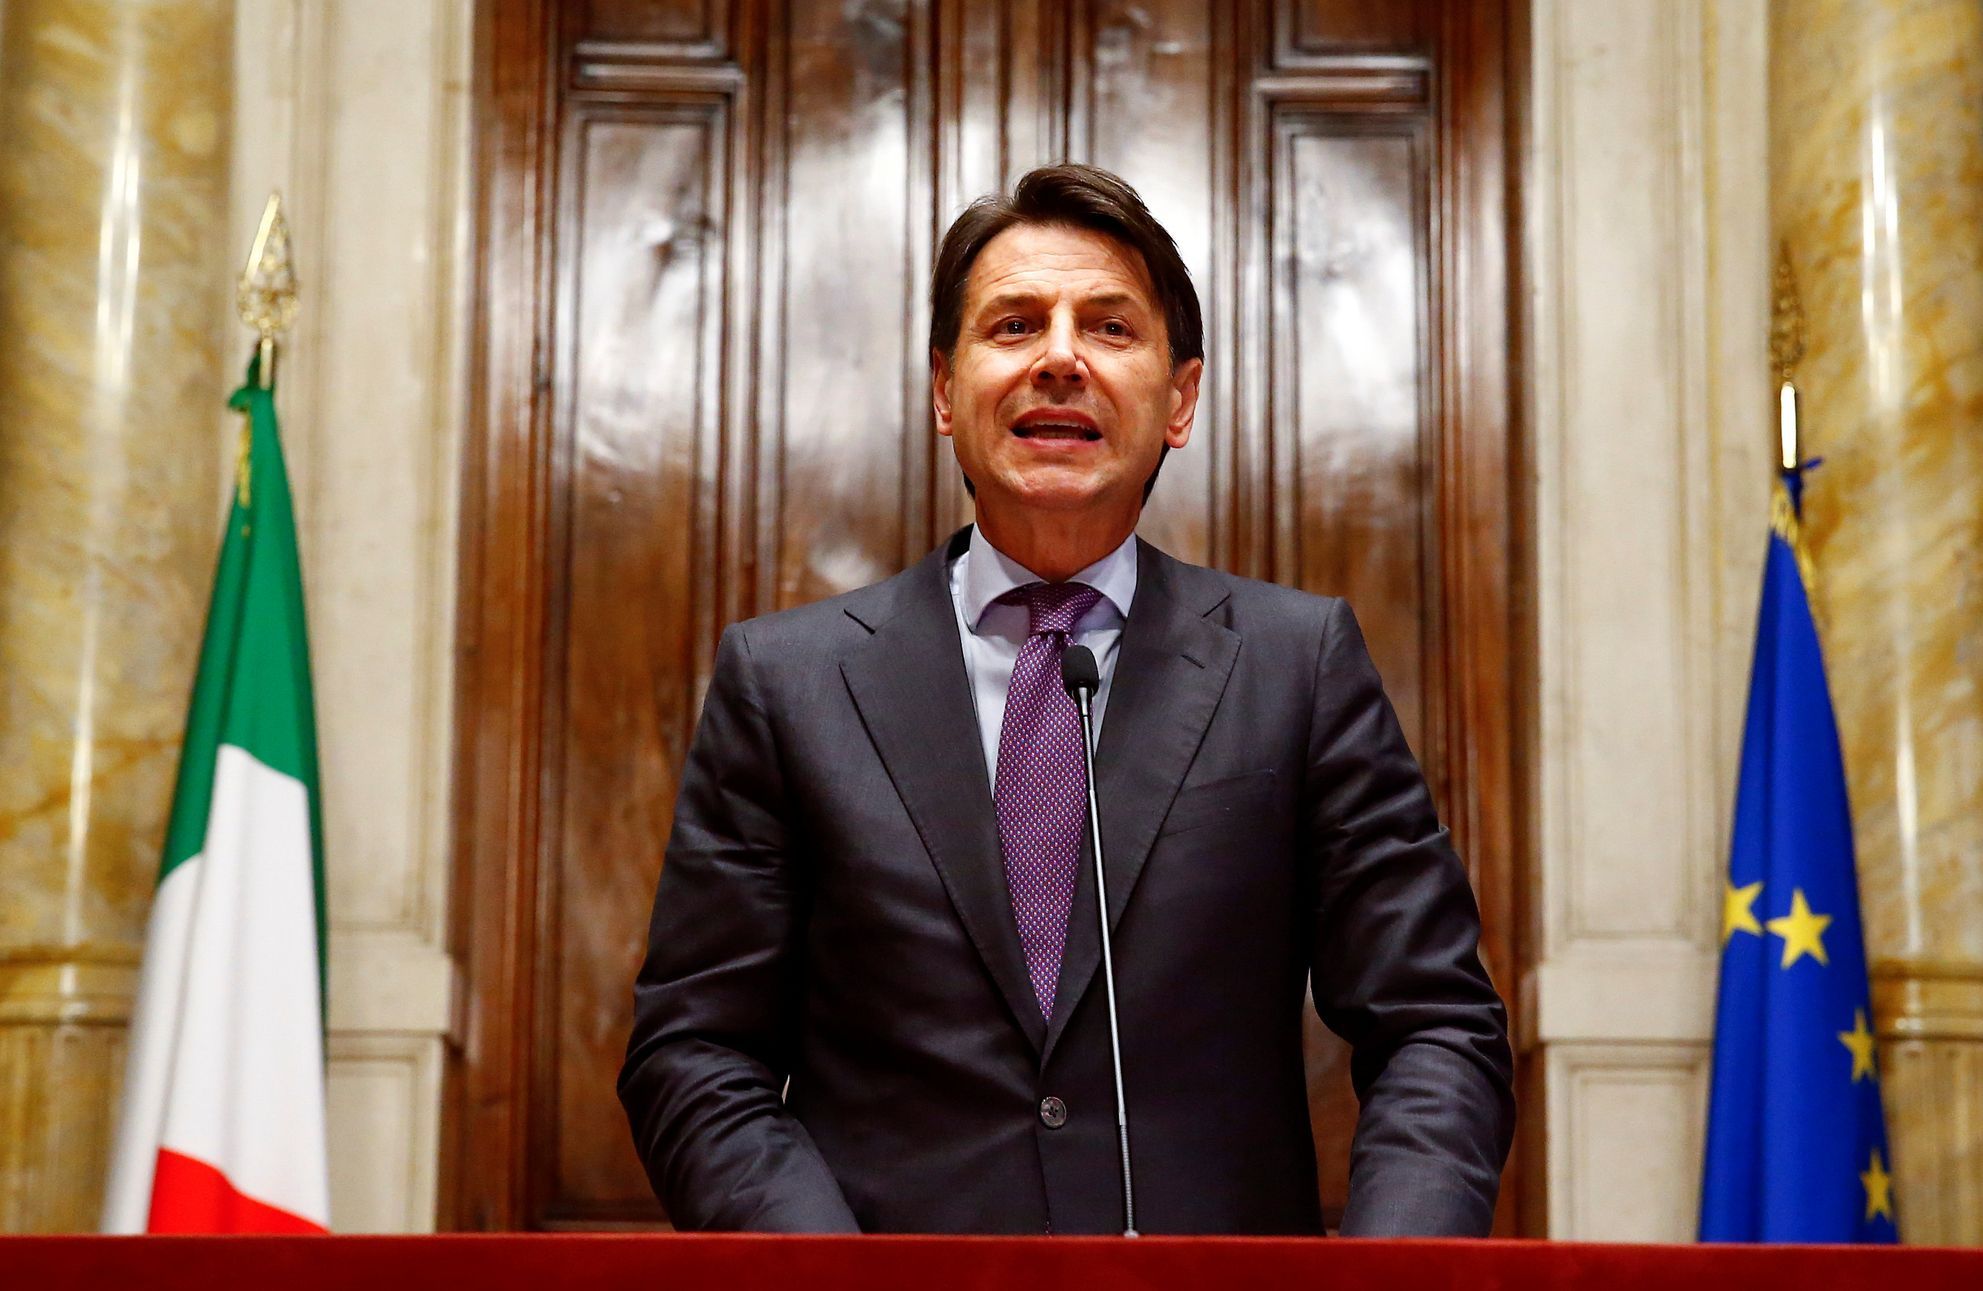 Giuseppe Conte, nuovo arrivato in politica, diventa il nuovo Primo Ministro italiano.  Guiderà una coalizione populista